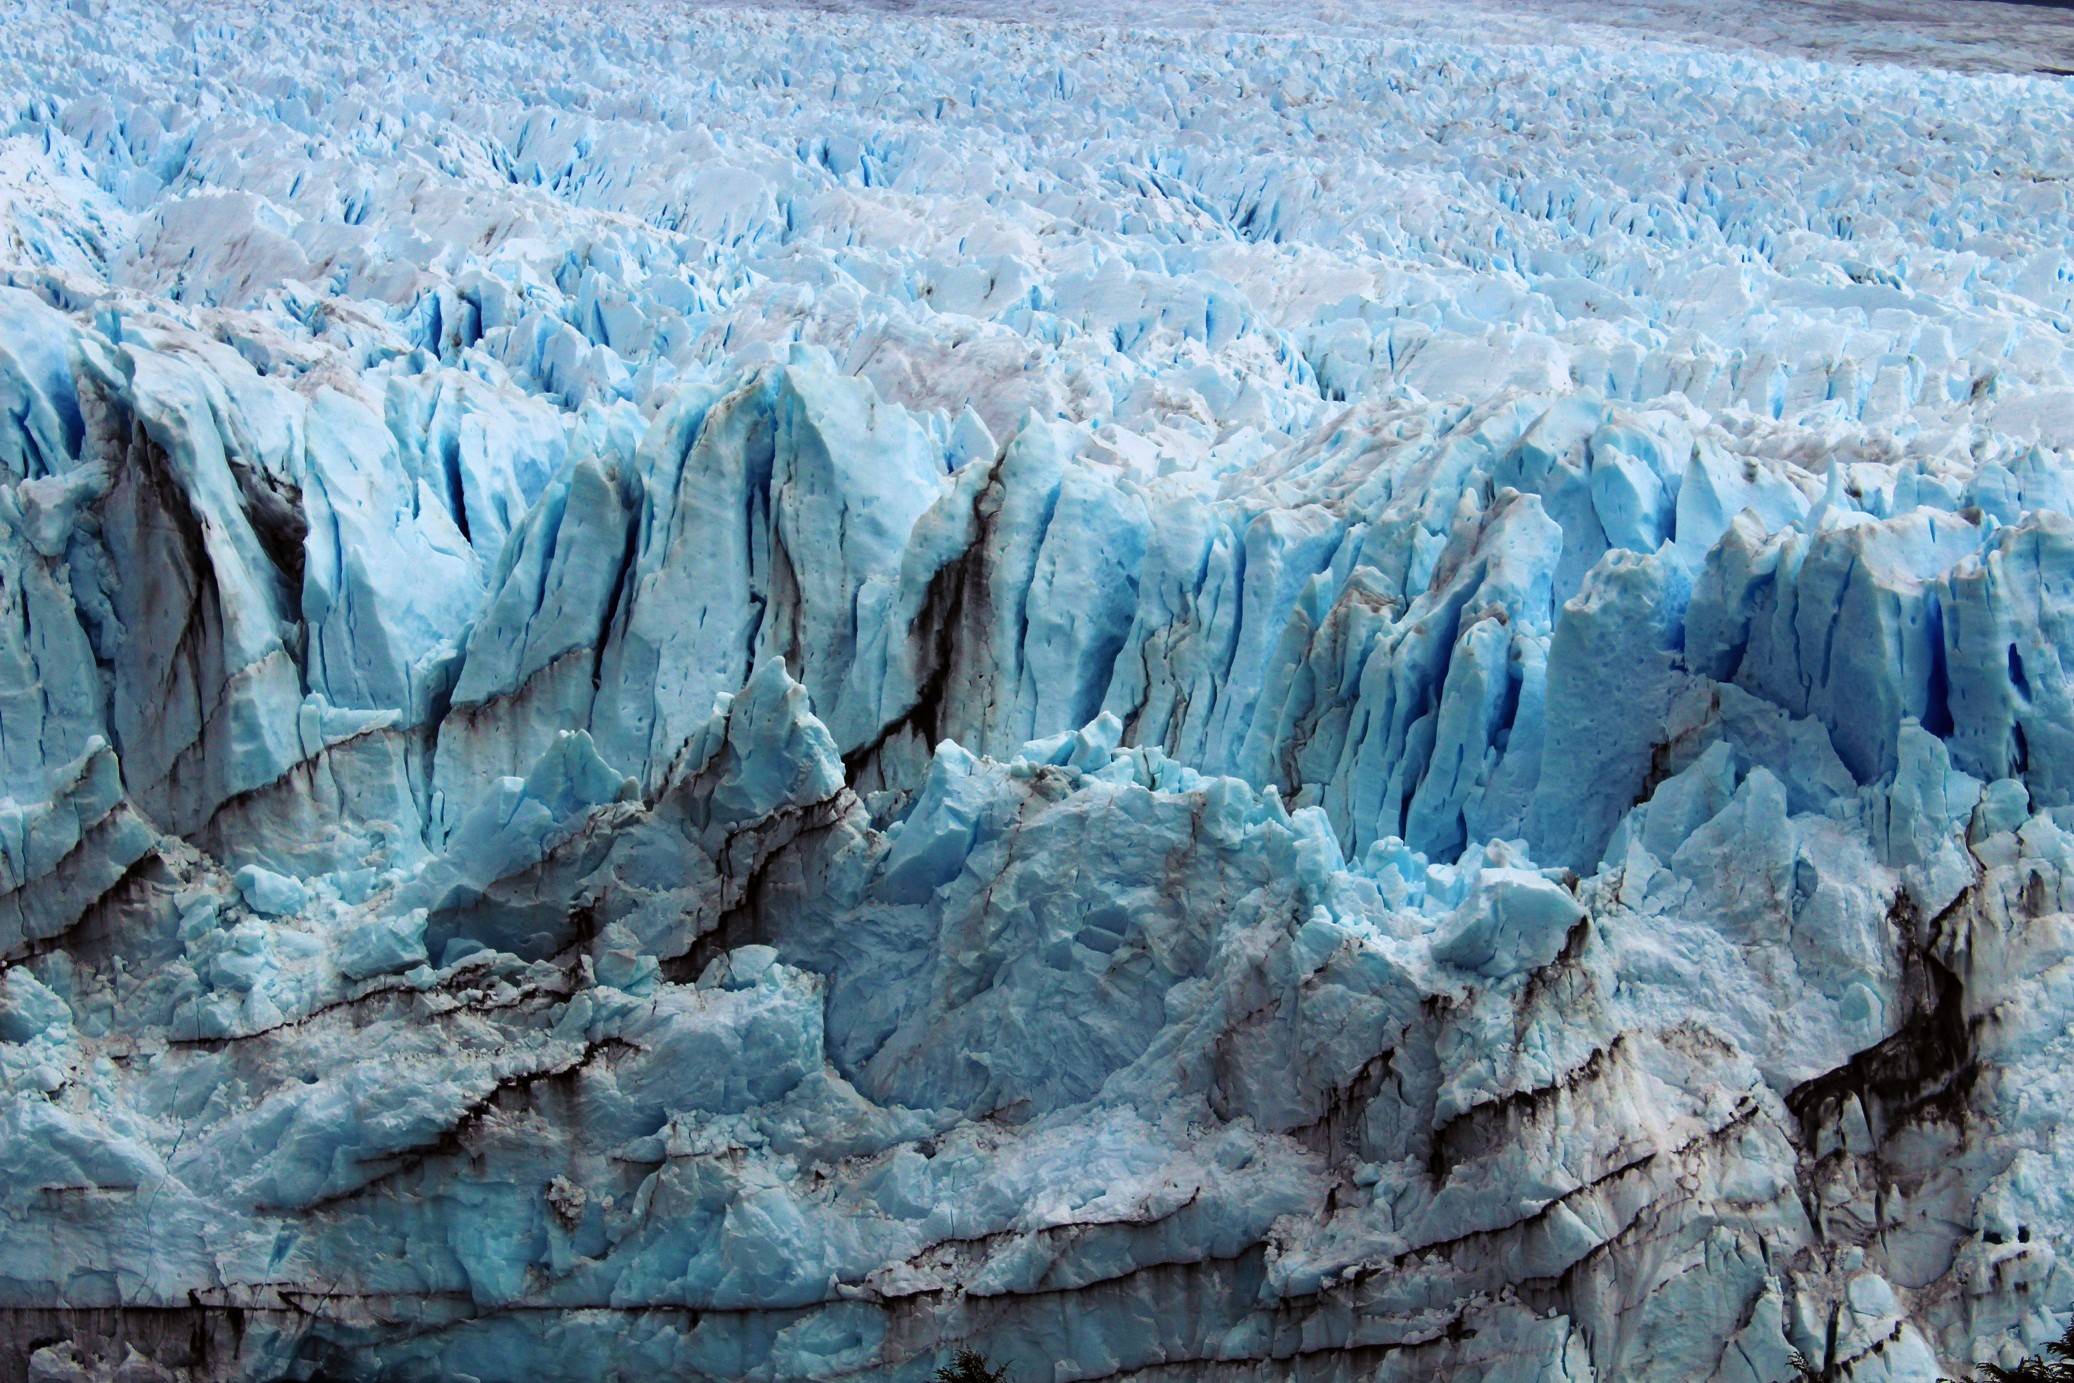 Wyjazd do Ameryki Południowej wpis nr. 34 Argentyna - Perito Moreno